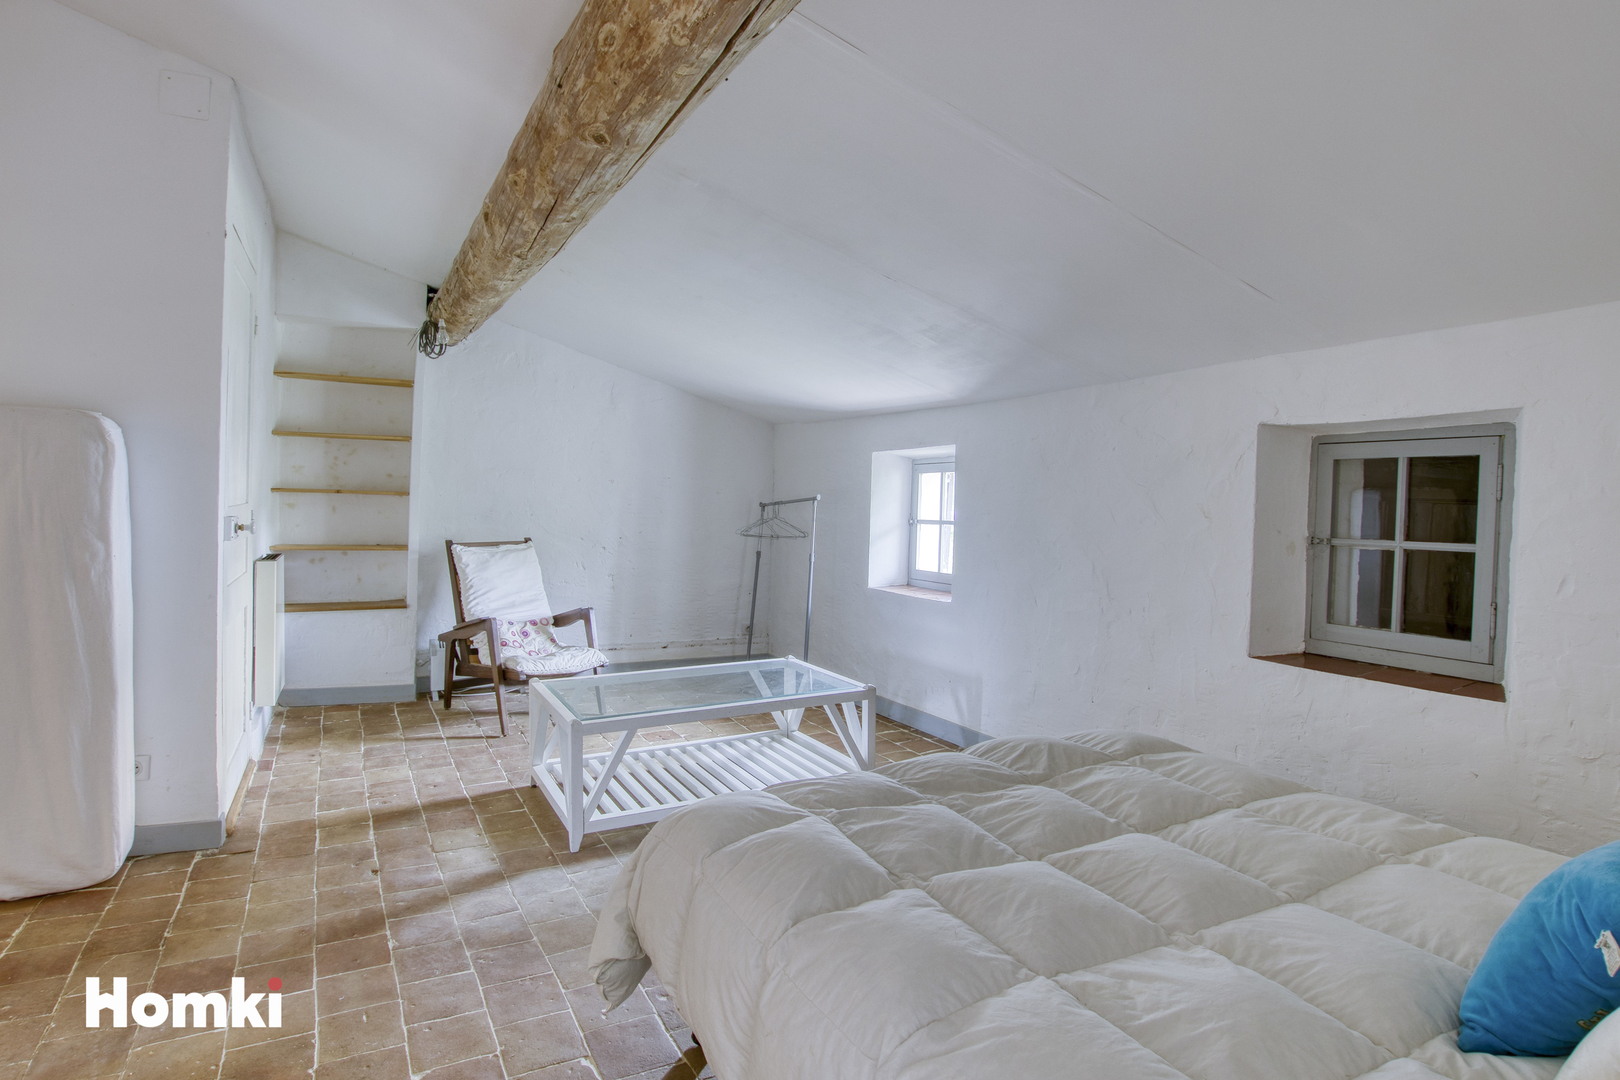 Homki - Vente Maison/villa  de 171.0 m² à La Cadière-d'Azur 83740